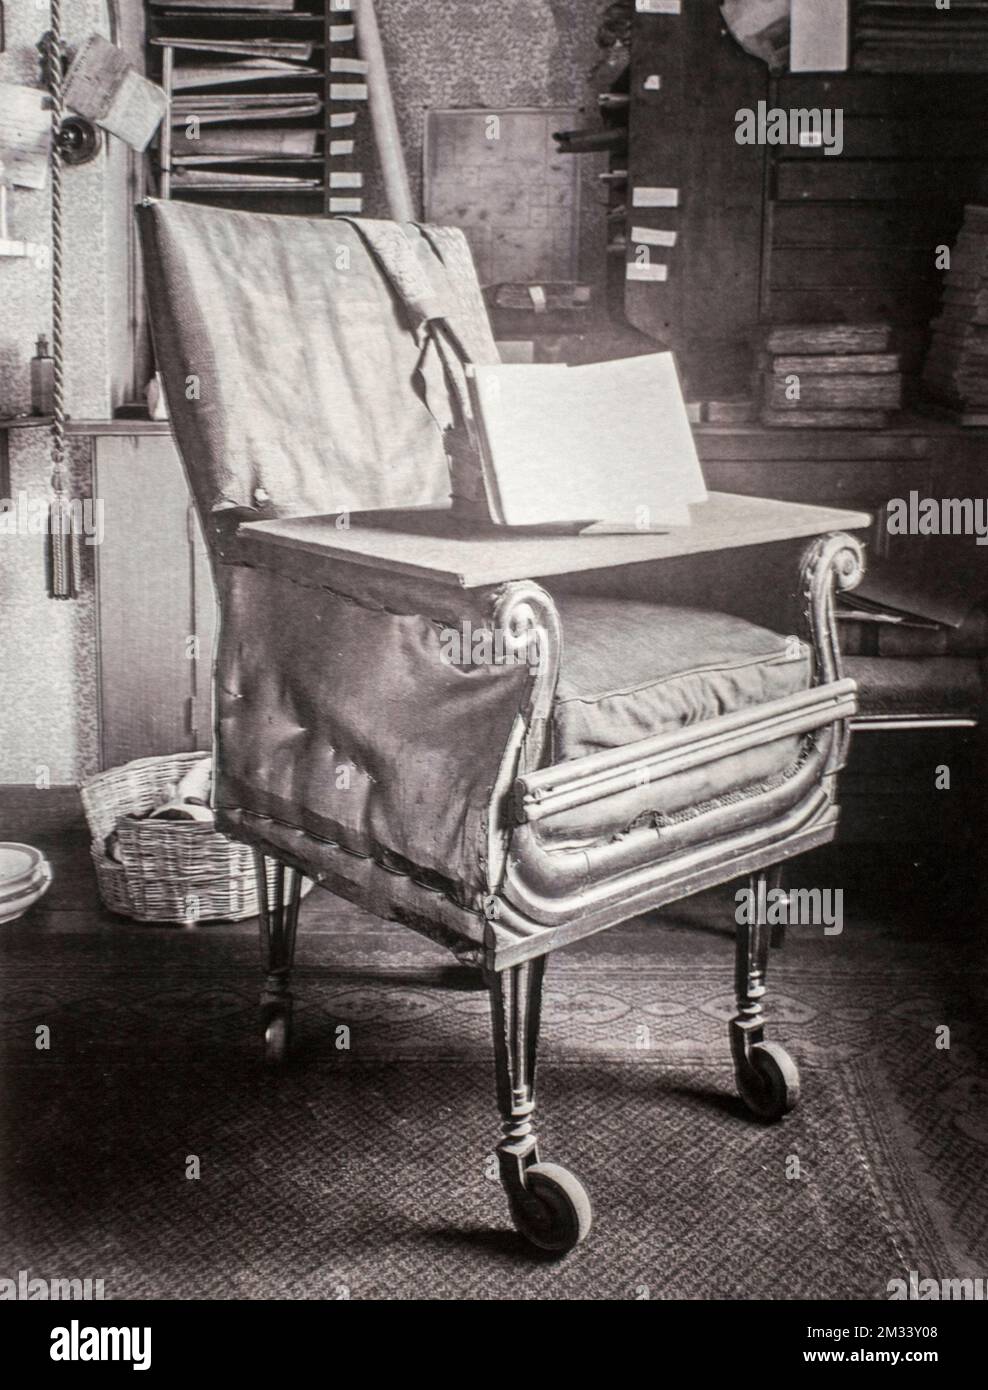 Première chaise de bureau moderne improvisée par le naturaliste Charles Darwin, équipée de roues / roulettes pour qu'il puisse rapidement se rendre à ses spécimens dans son étude Banque D'Images